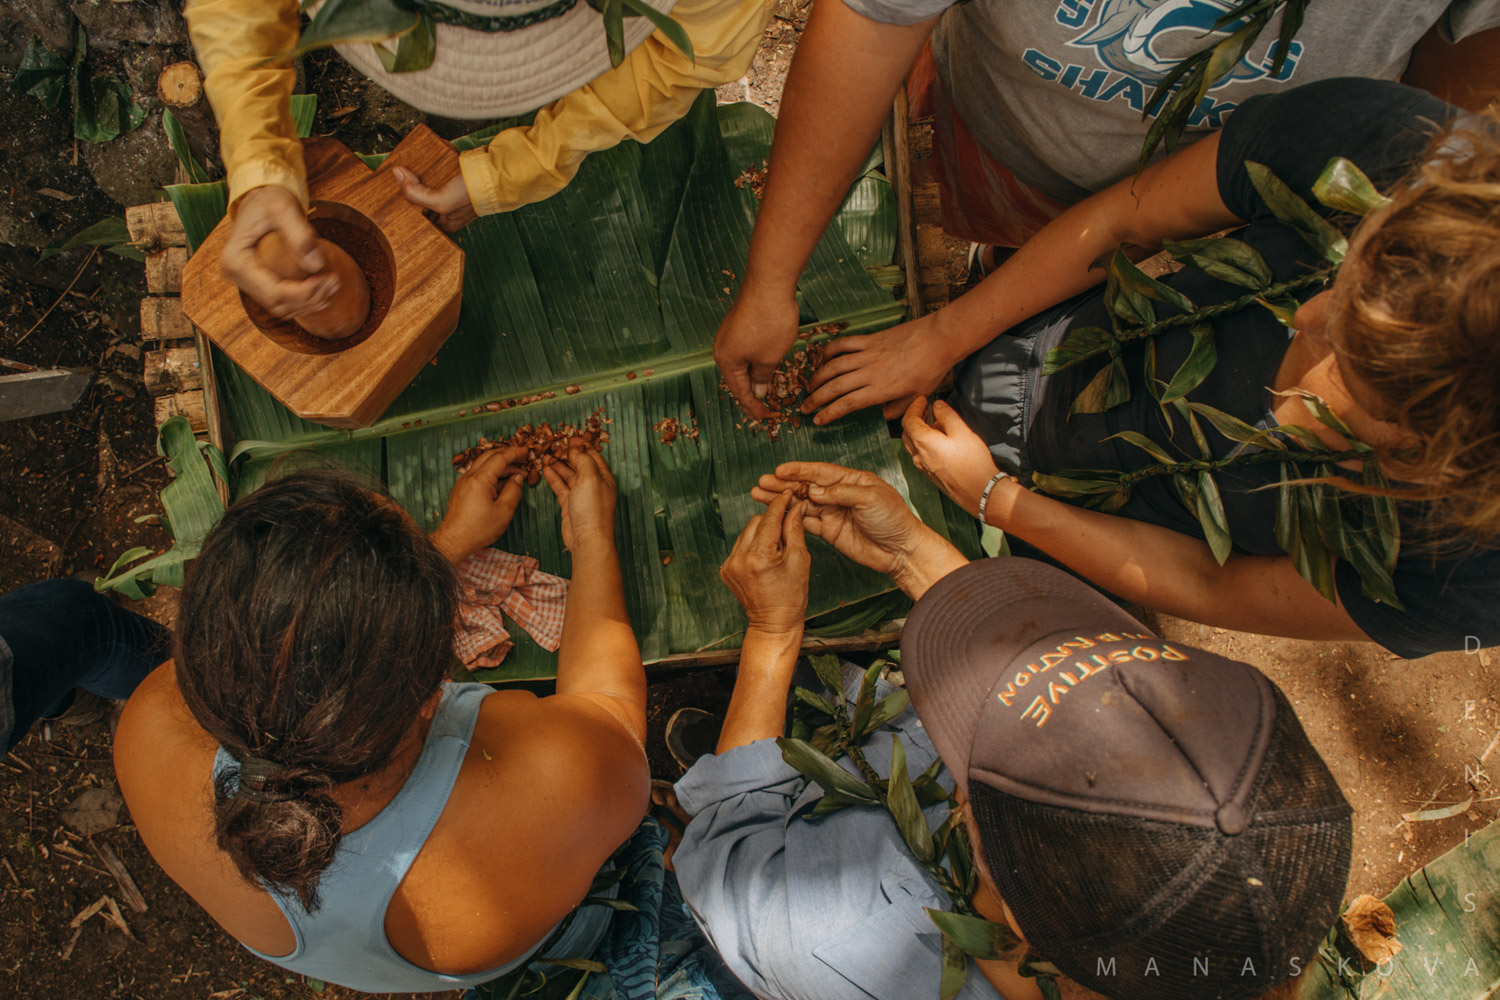 KokoSamoa-Cacao-Samoa-organicfarm-healthyeating-farmer-agriculture-documentary-photography-documentaryfilm-organicfarming-13COVER-1